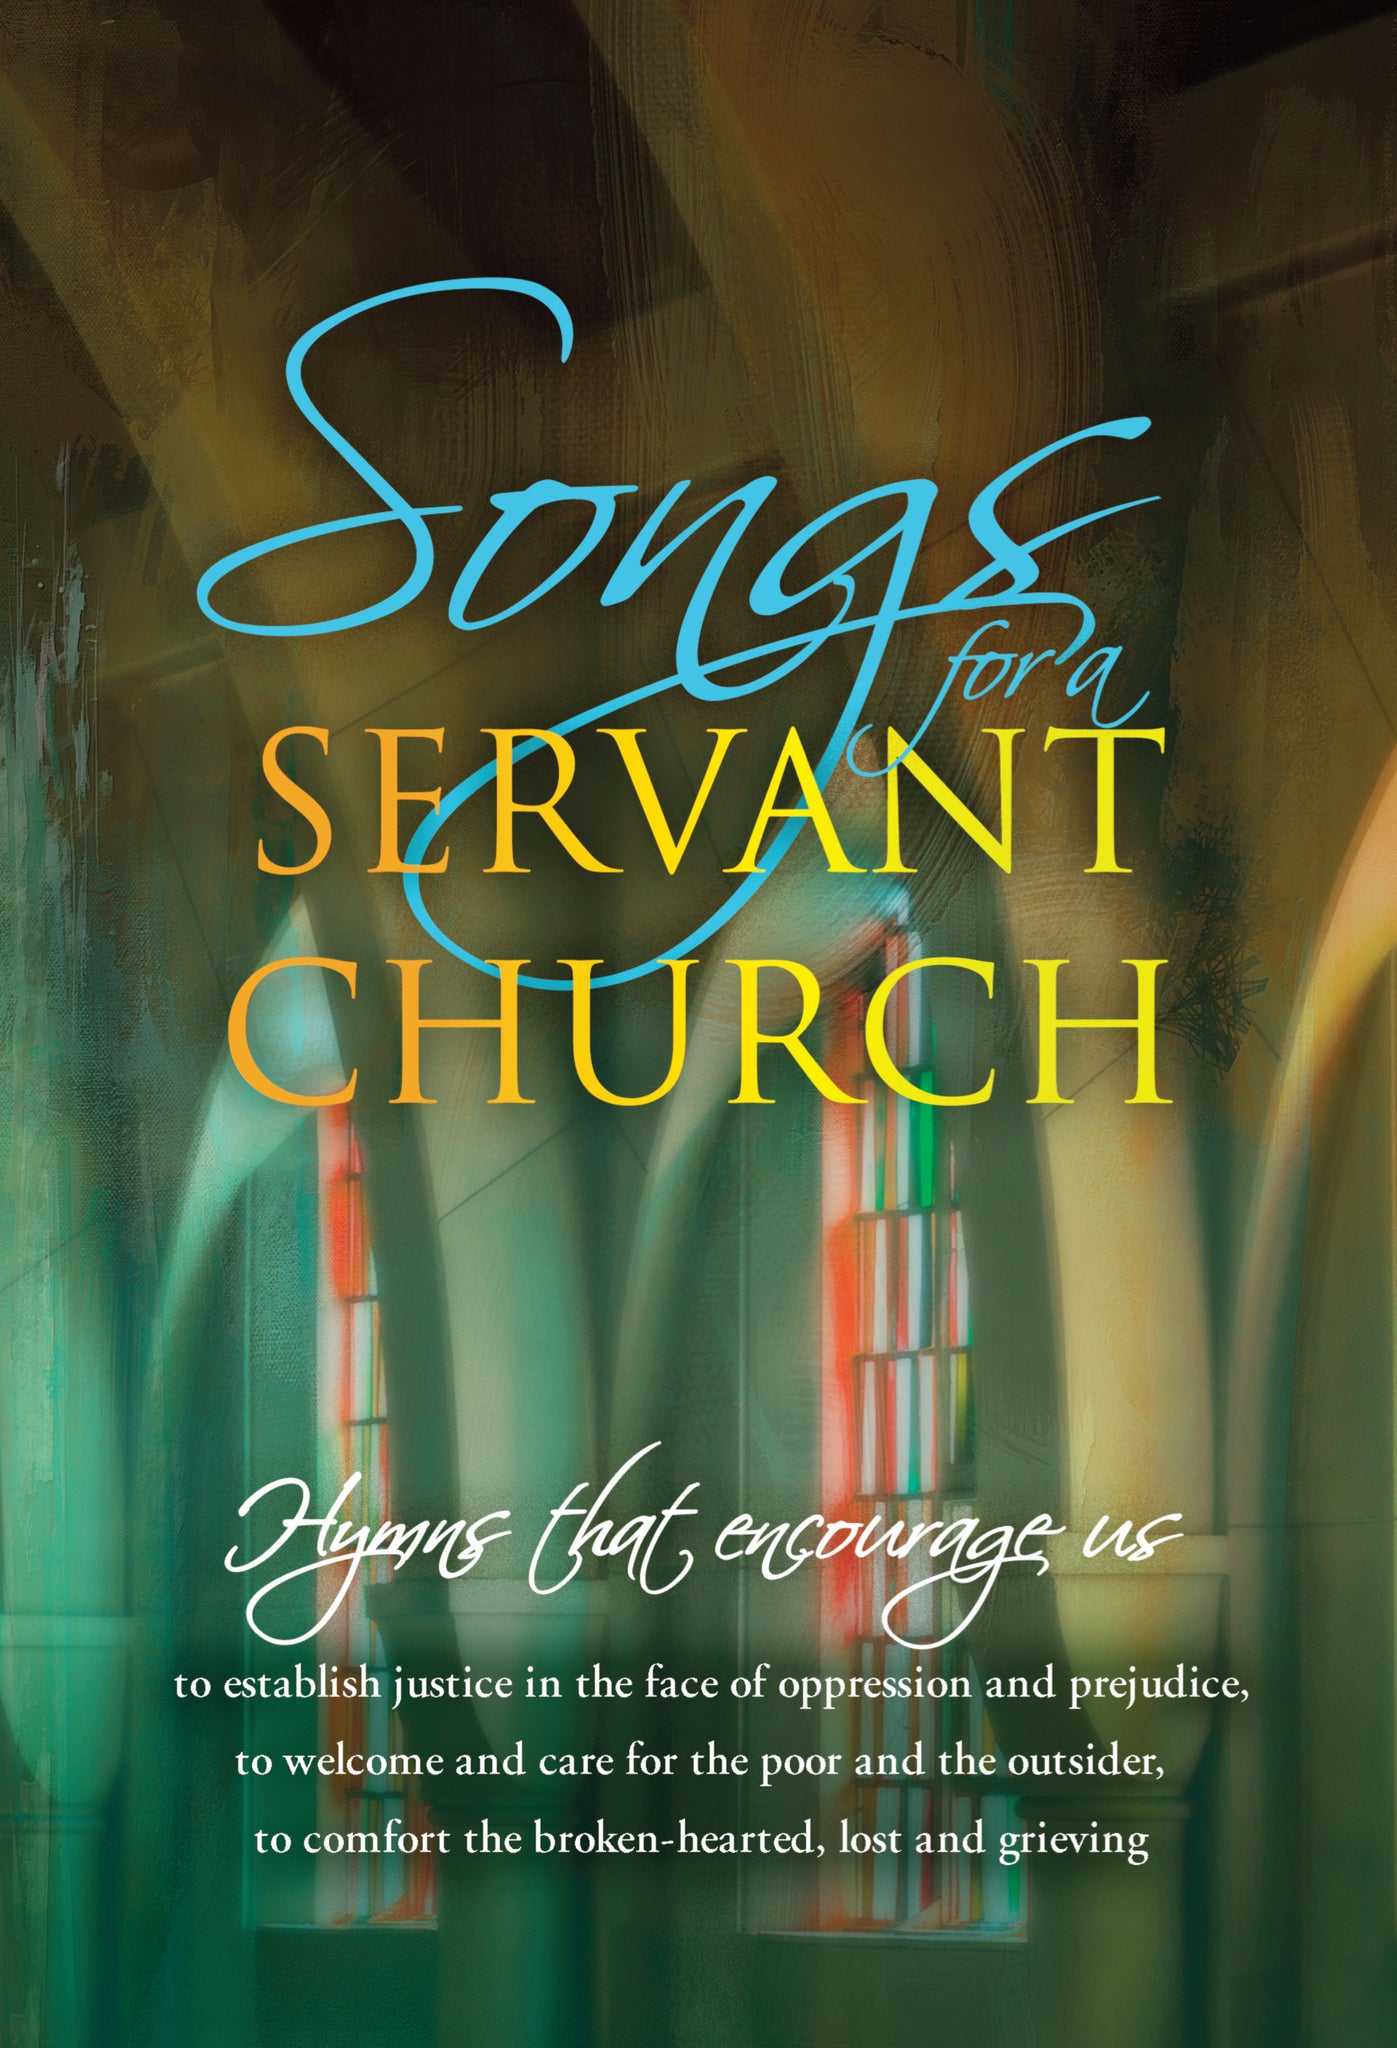 Songs For A Servant Church (Cox)   Songs For A Servant Church (Cox)   